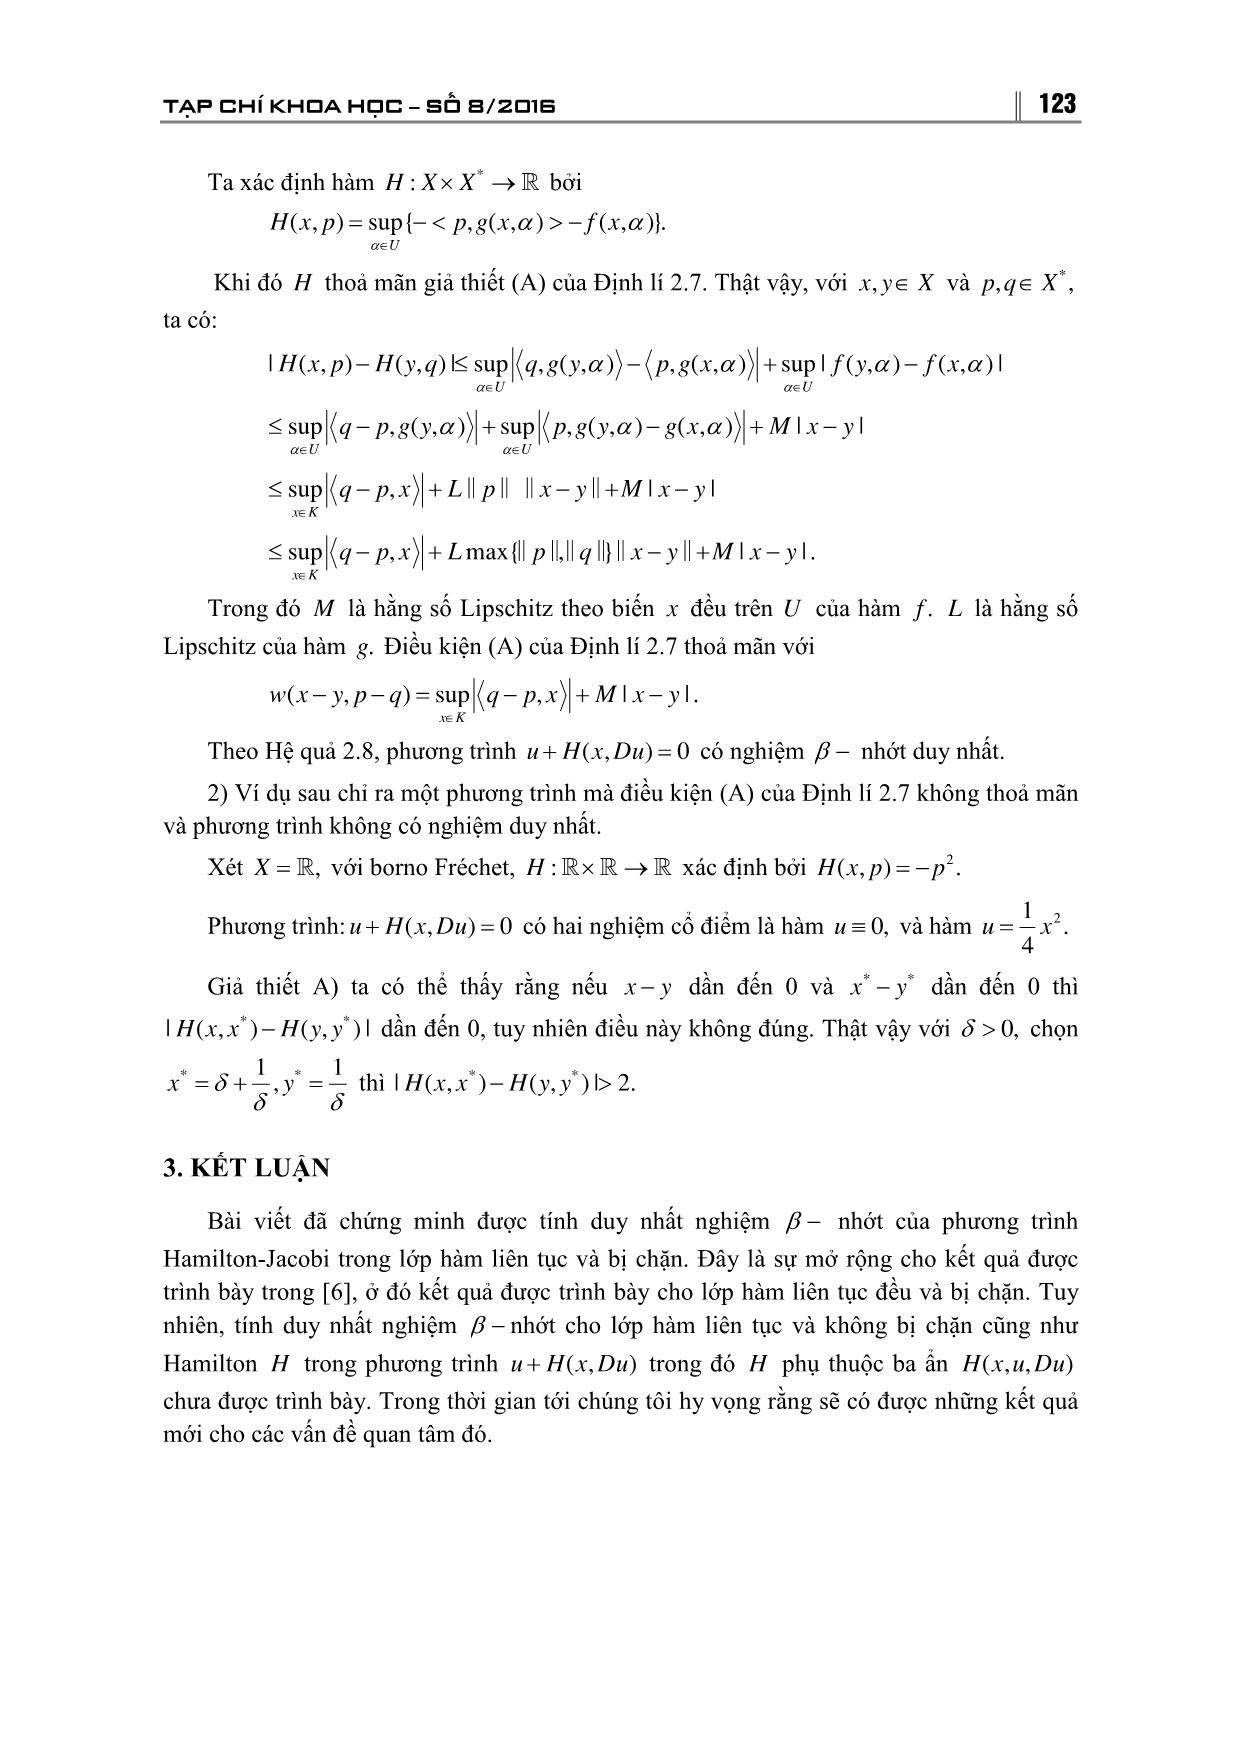 Tính duy nhất nghiệm của β - Nhớt của phương trình Hamilton-Jacobi trong không gian Banach trang 9